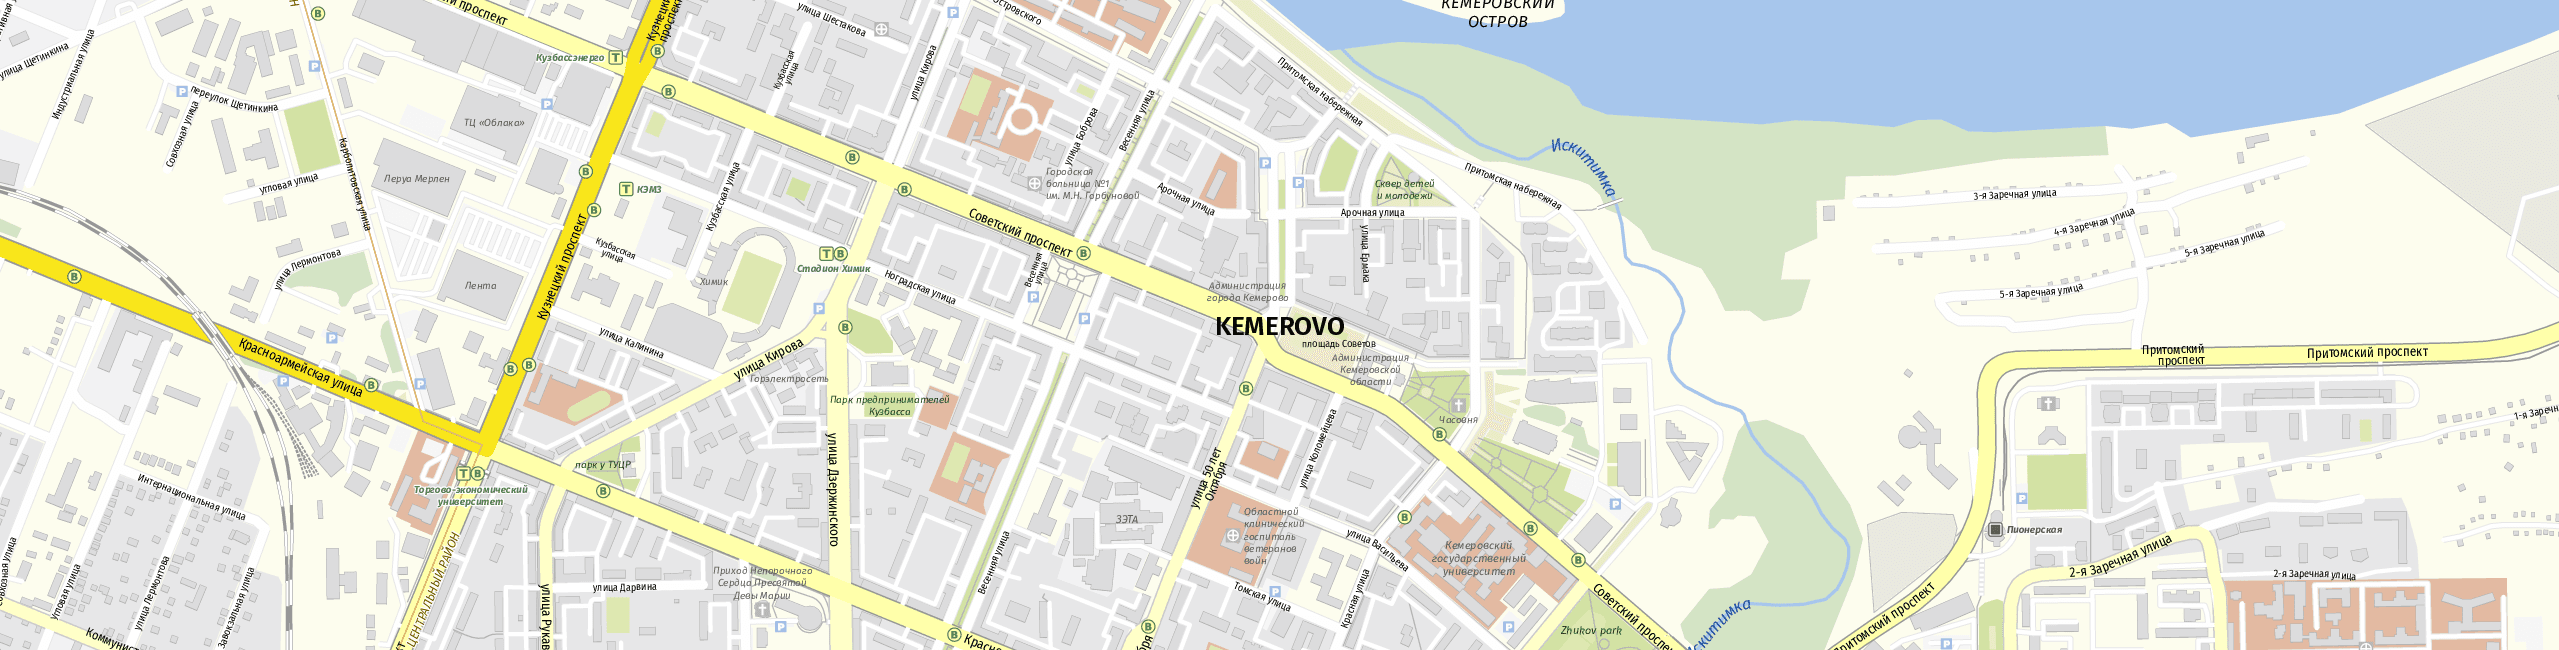 Stadtplan Kemerovo zum Downloaden.